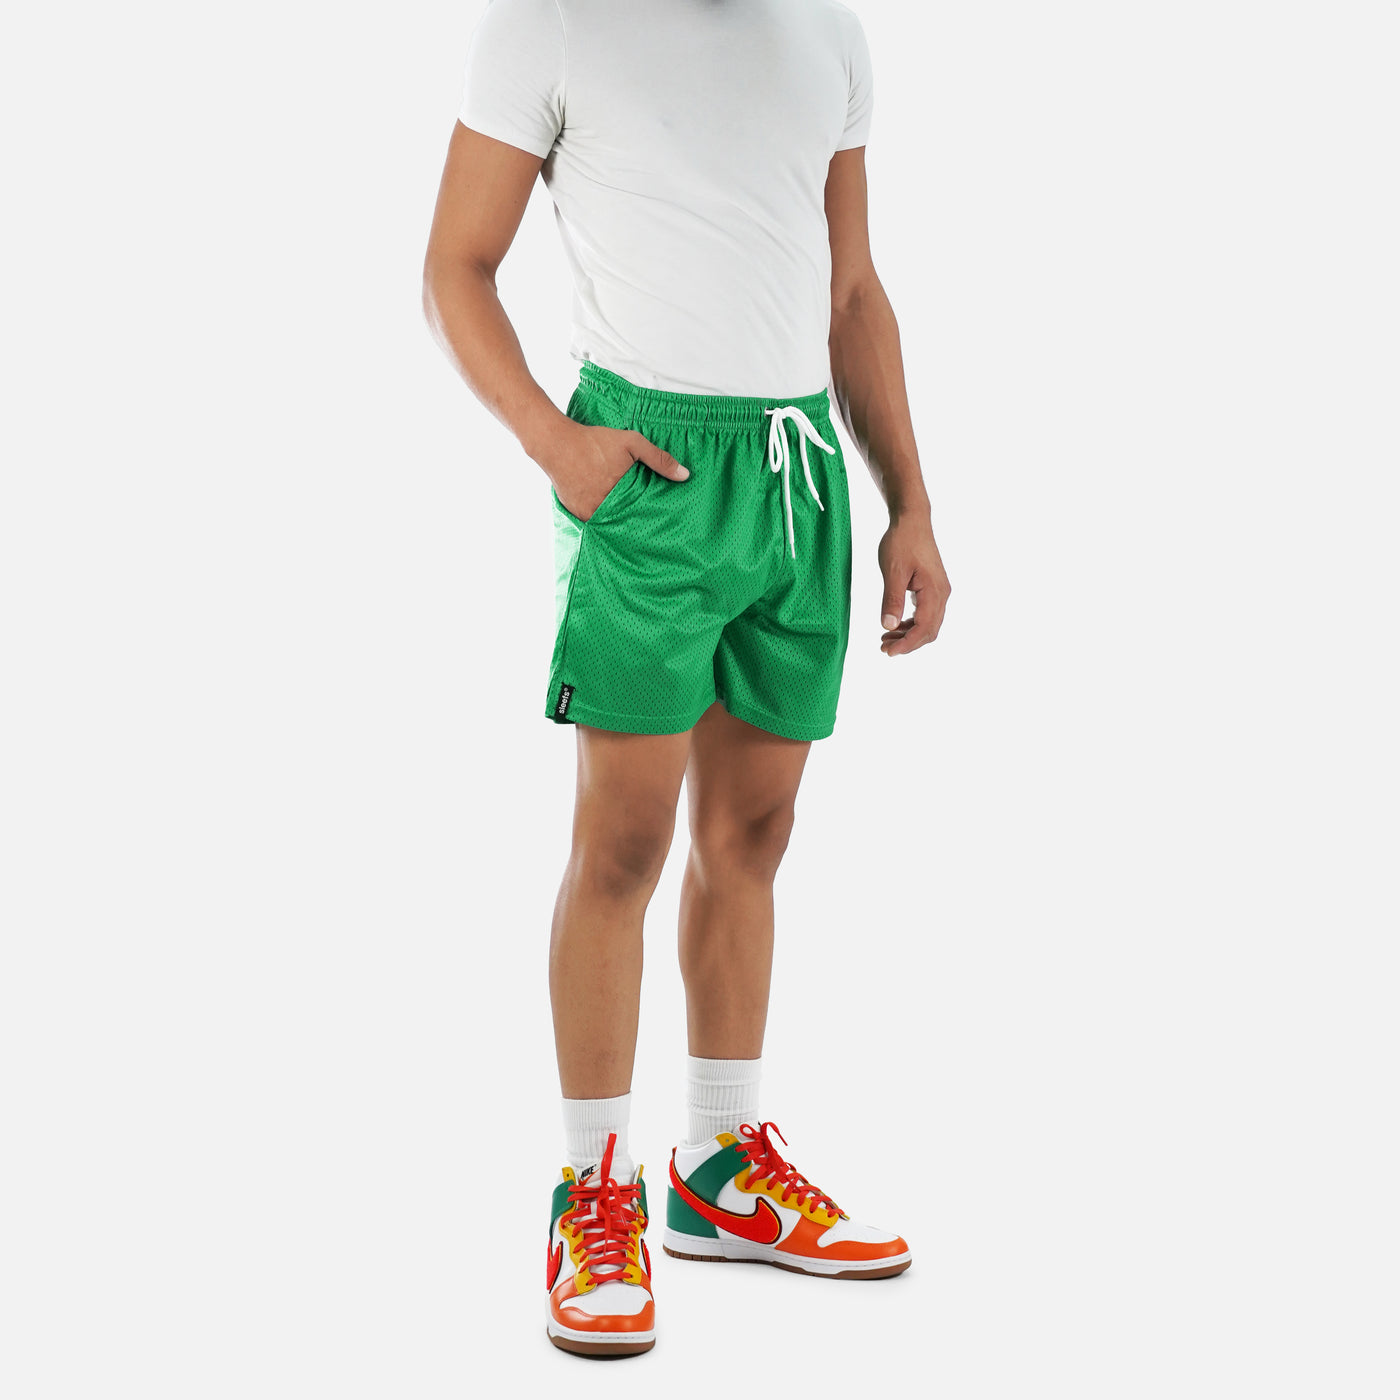 Spring Green Shorts - 7"